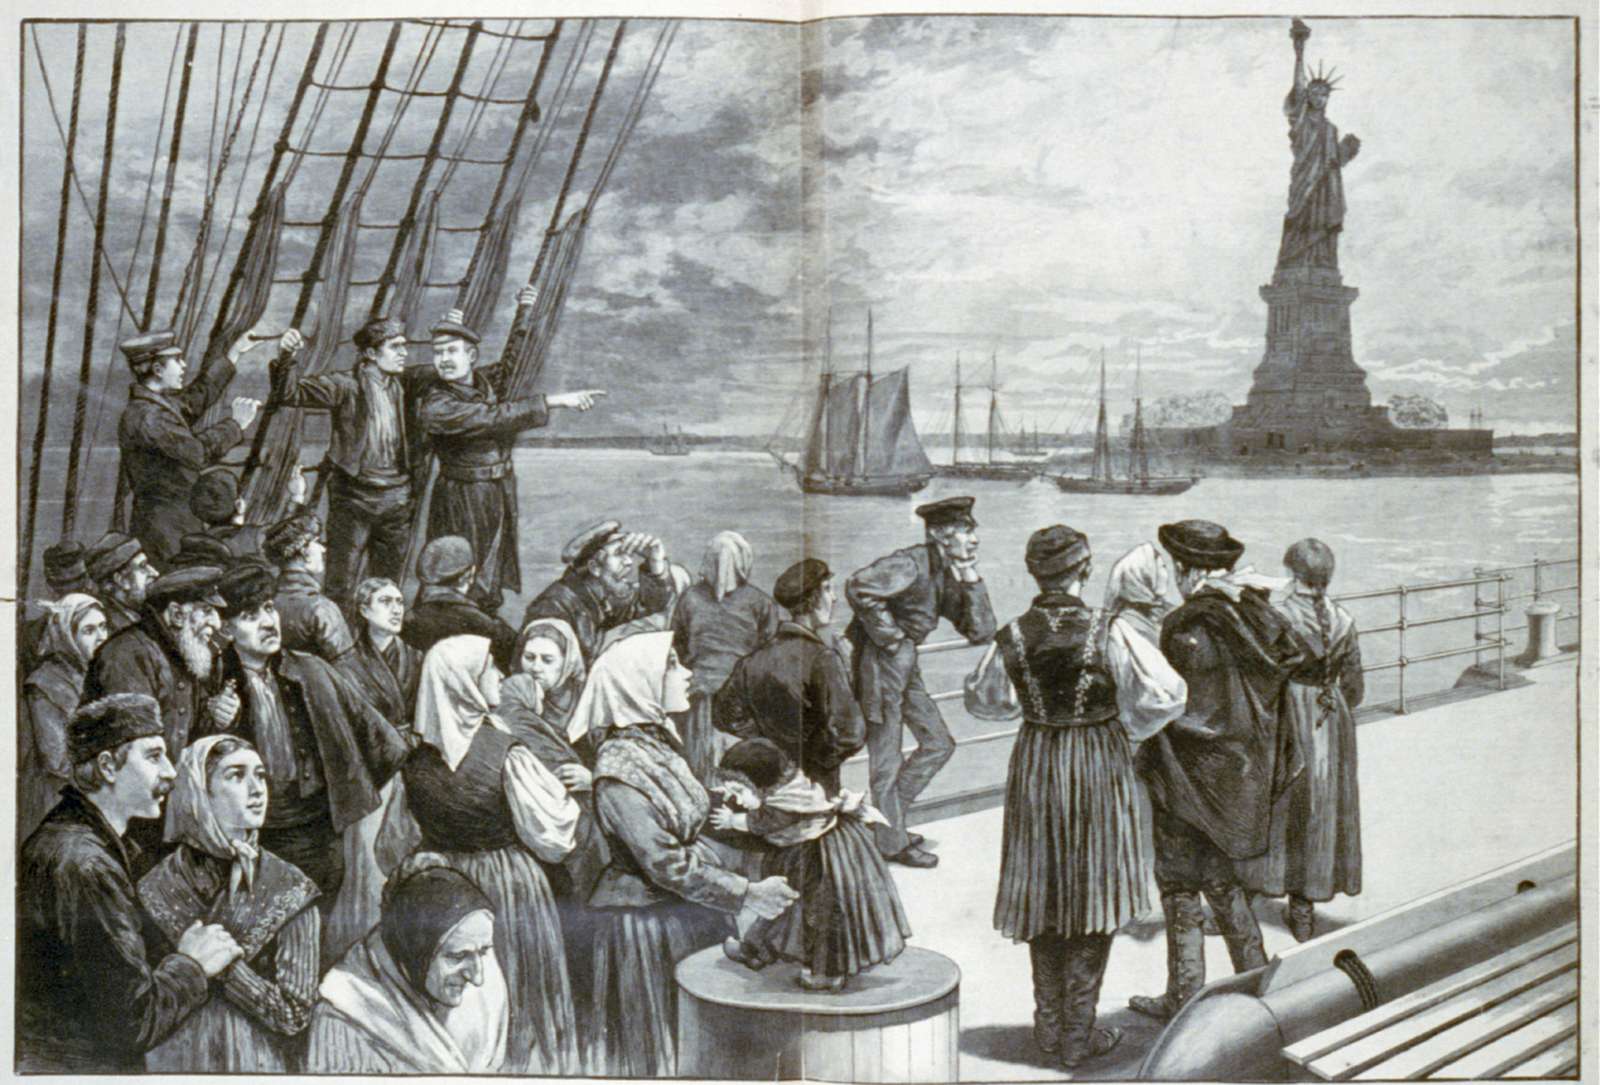 Ирландская и итальянская иммиграция в США во второй половине XIX в. – начале XX в.